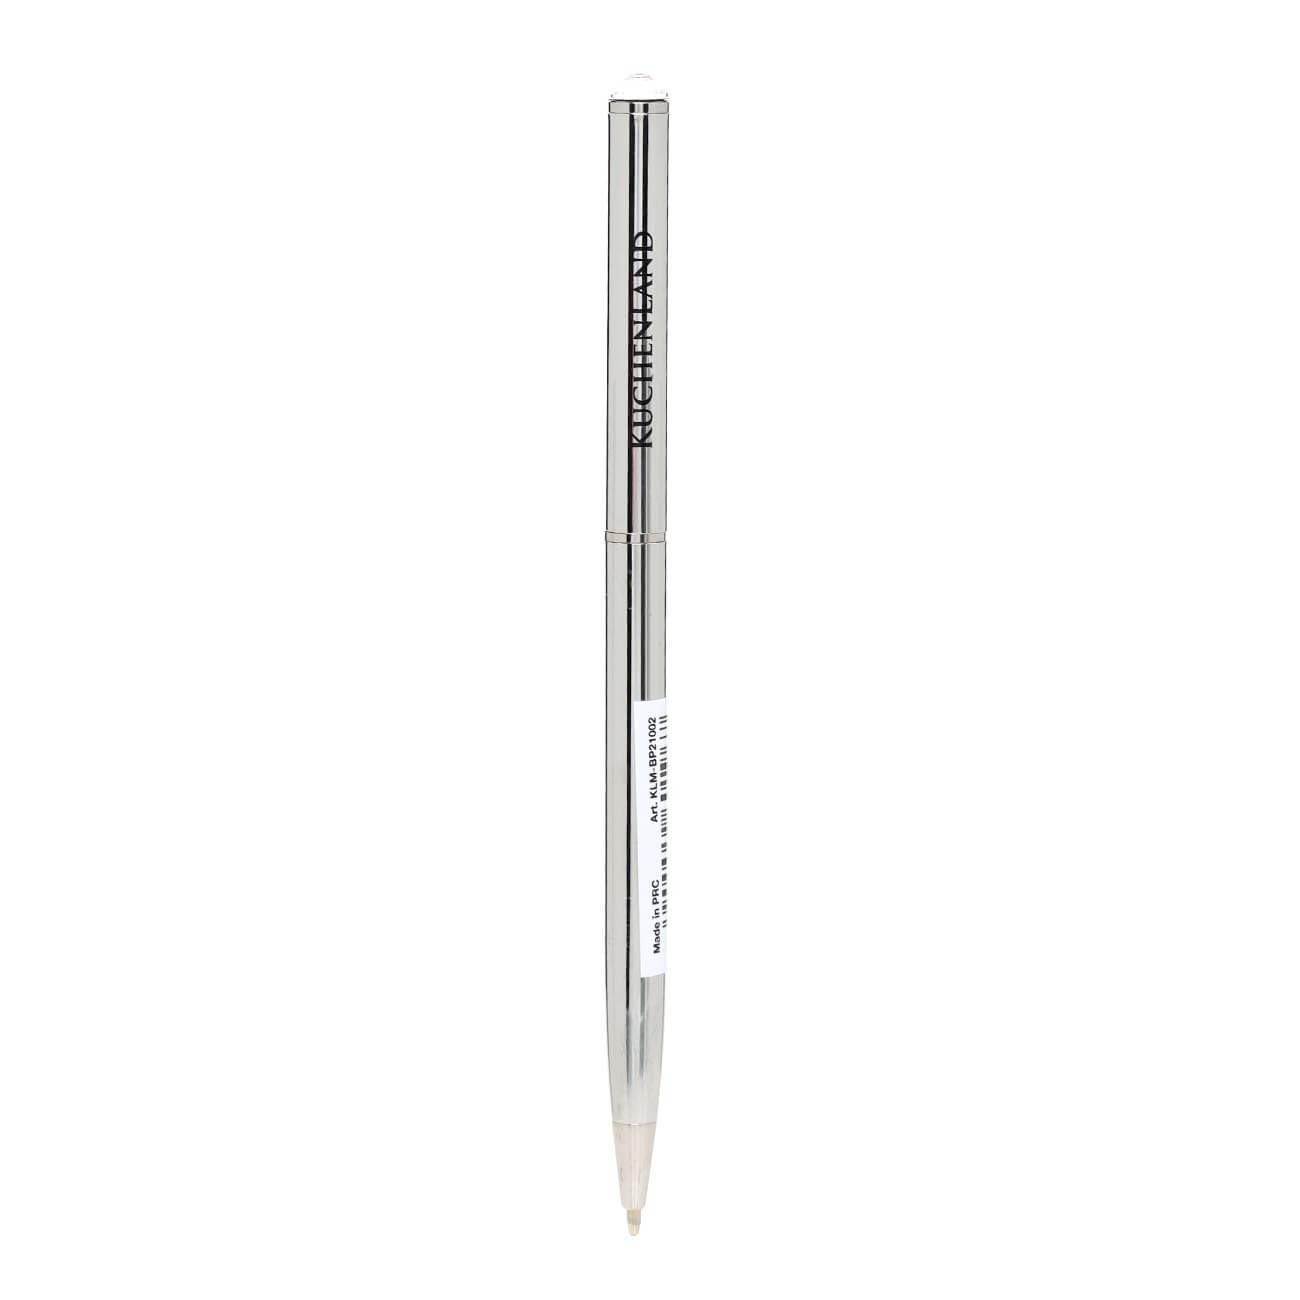 Ручка шариковая, 13 см, с кристаллом, металл, серебристая, Draw шариковая ручка lorex